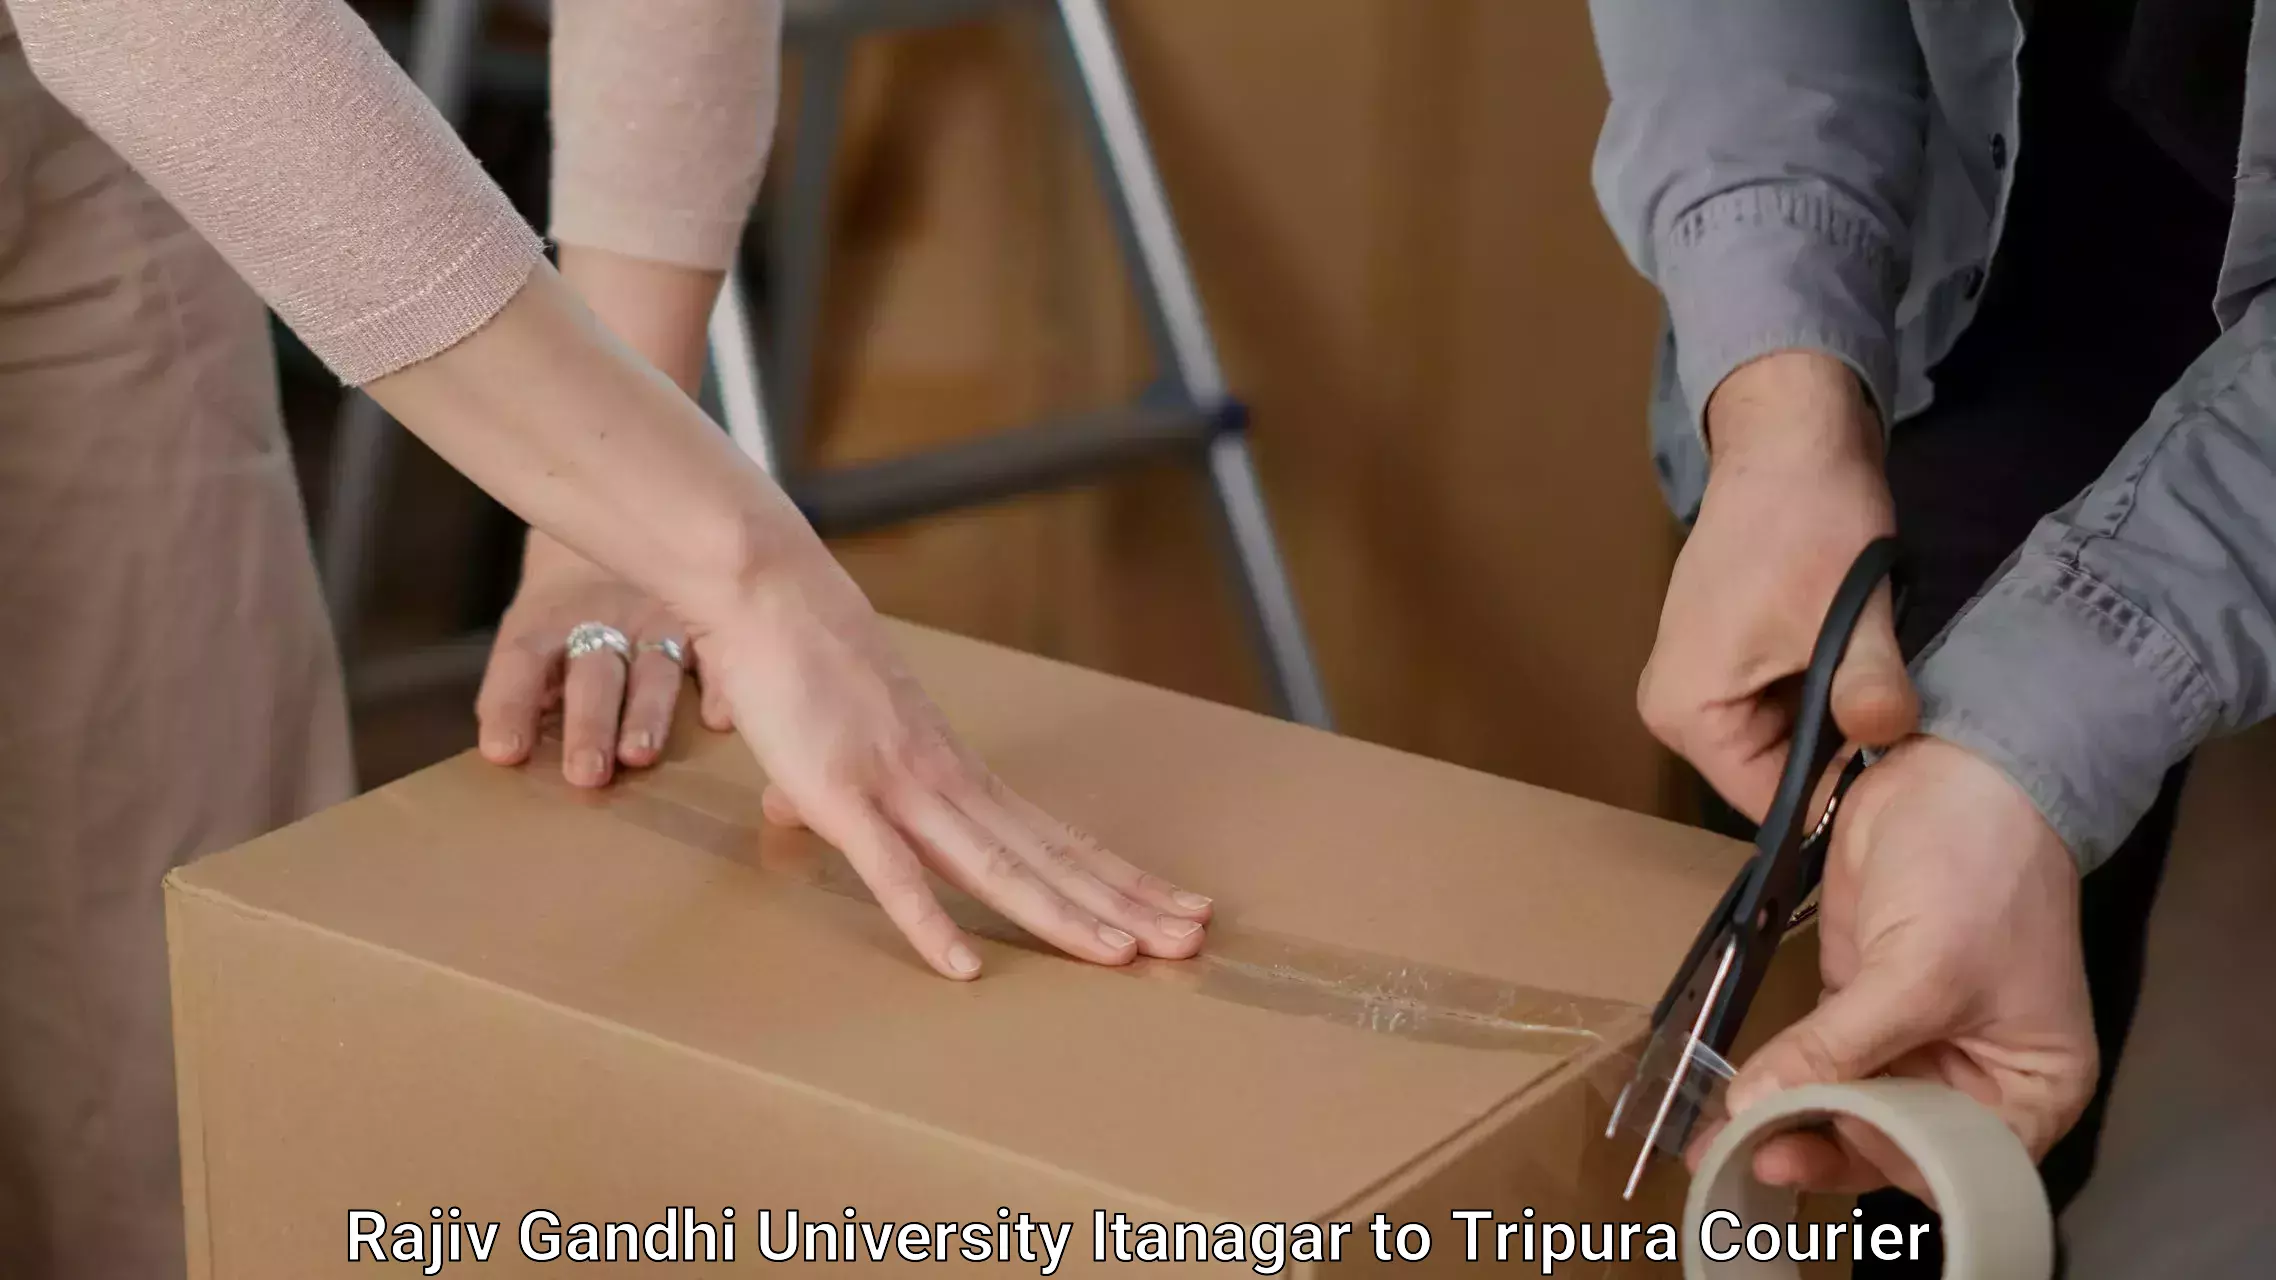 Furniture moving and handling Rajiv Gandhi University Itanagar to Udaipur Tripura